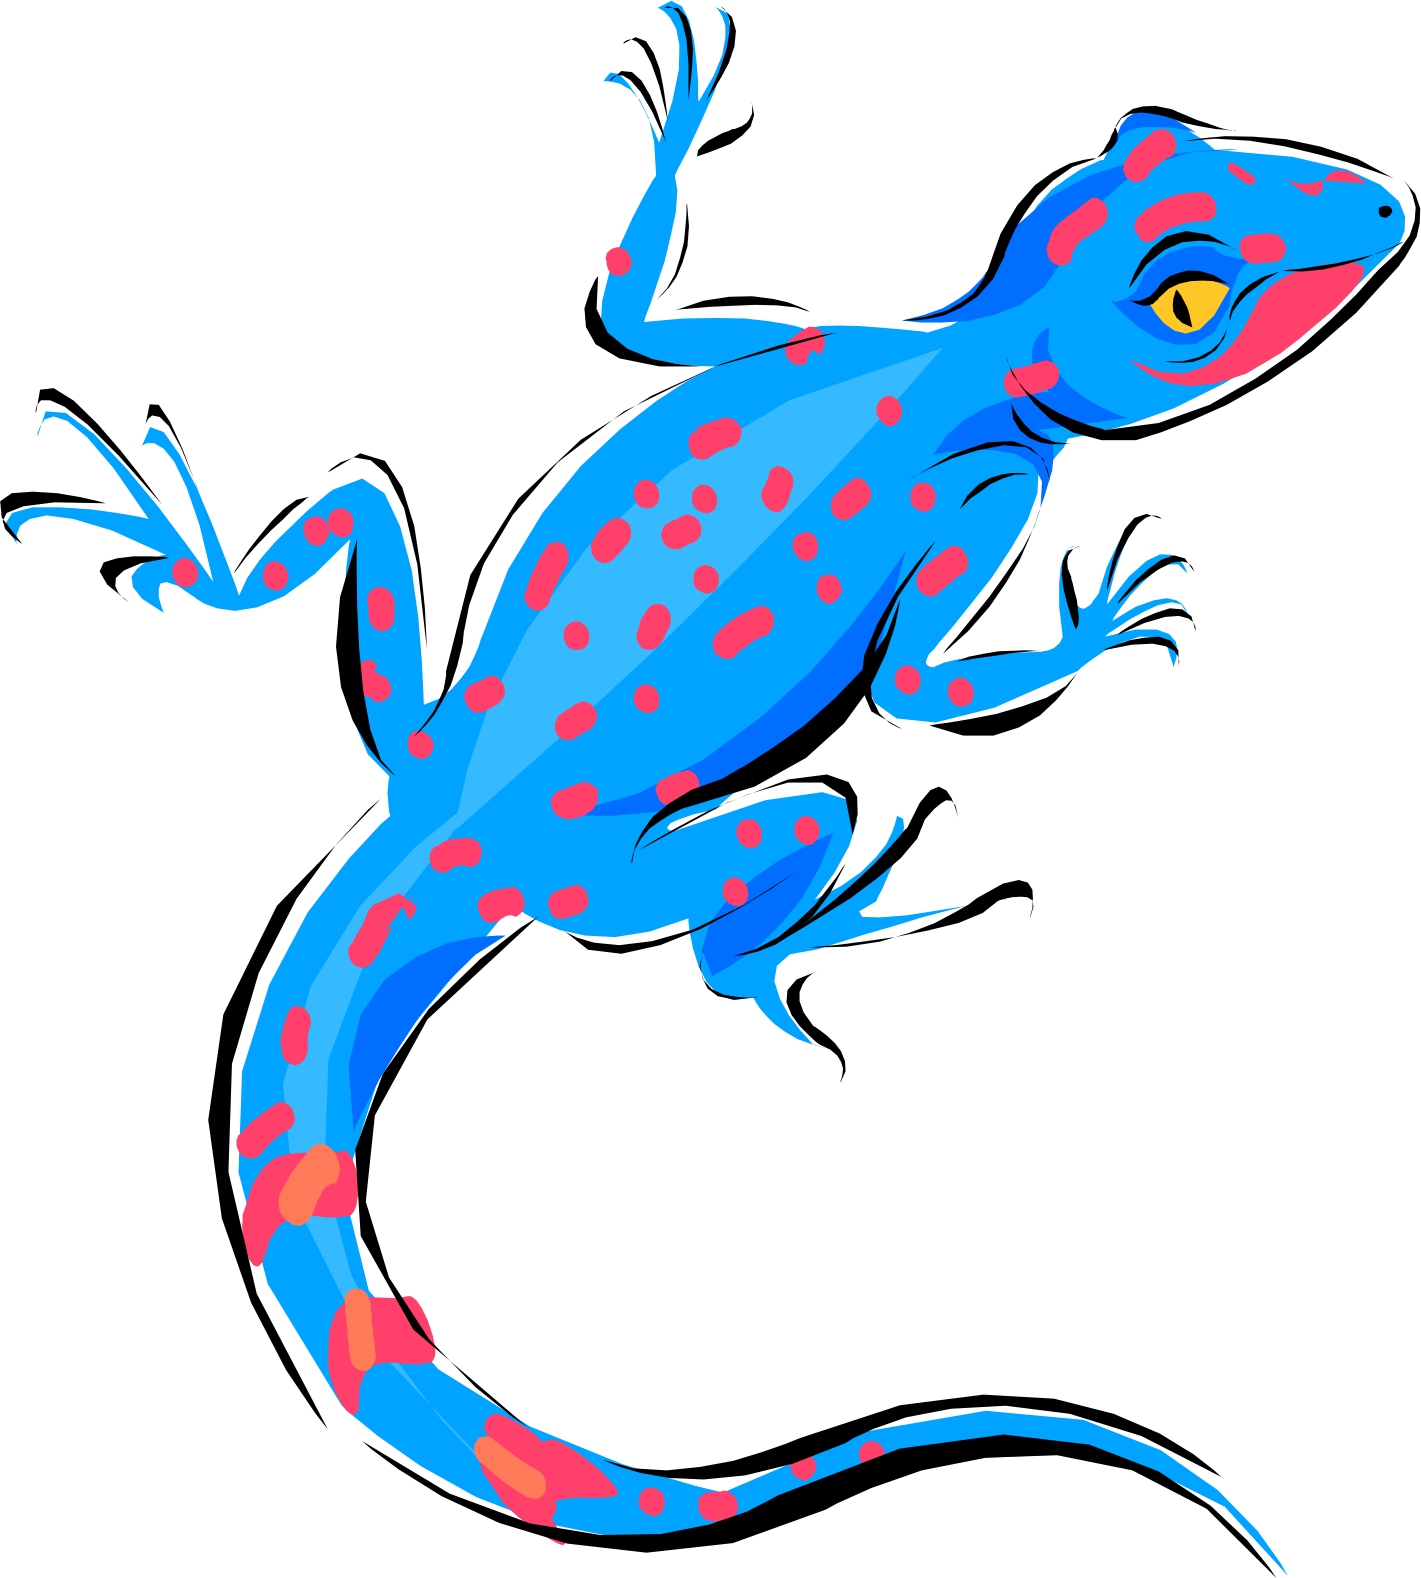 Lizard Clipart Ecmablkcn Jpeg - Lizard Clip Art